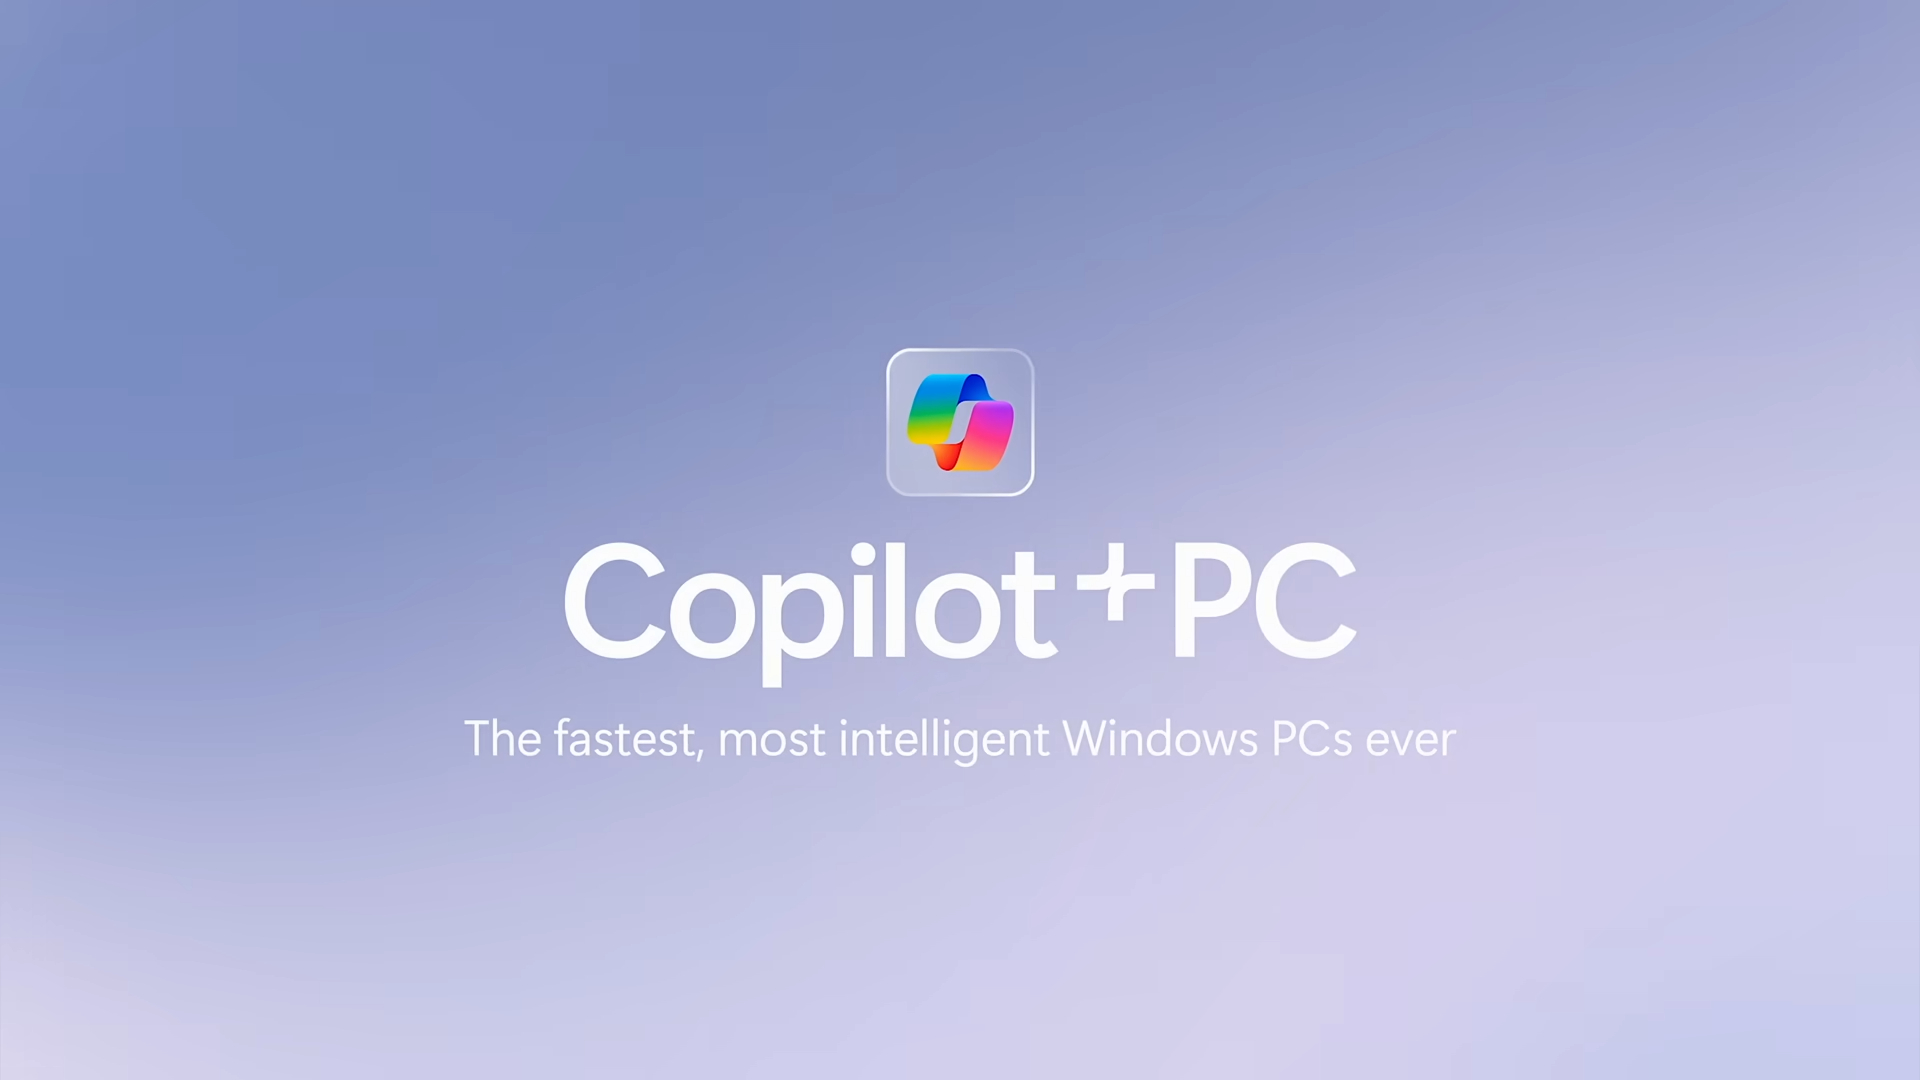 微软称Copilot+PC是“史上最强、最智慧的Windows PC”。来源：微软